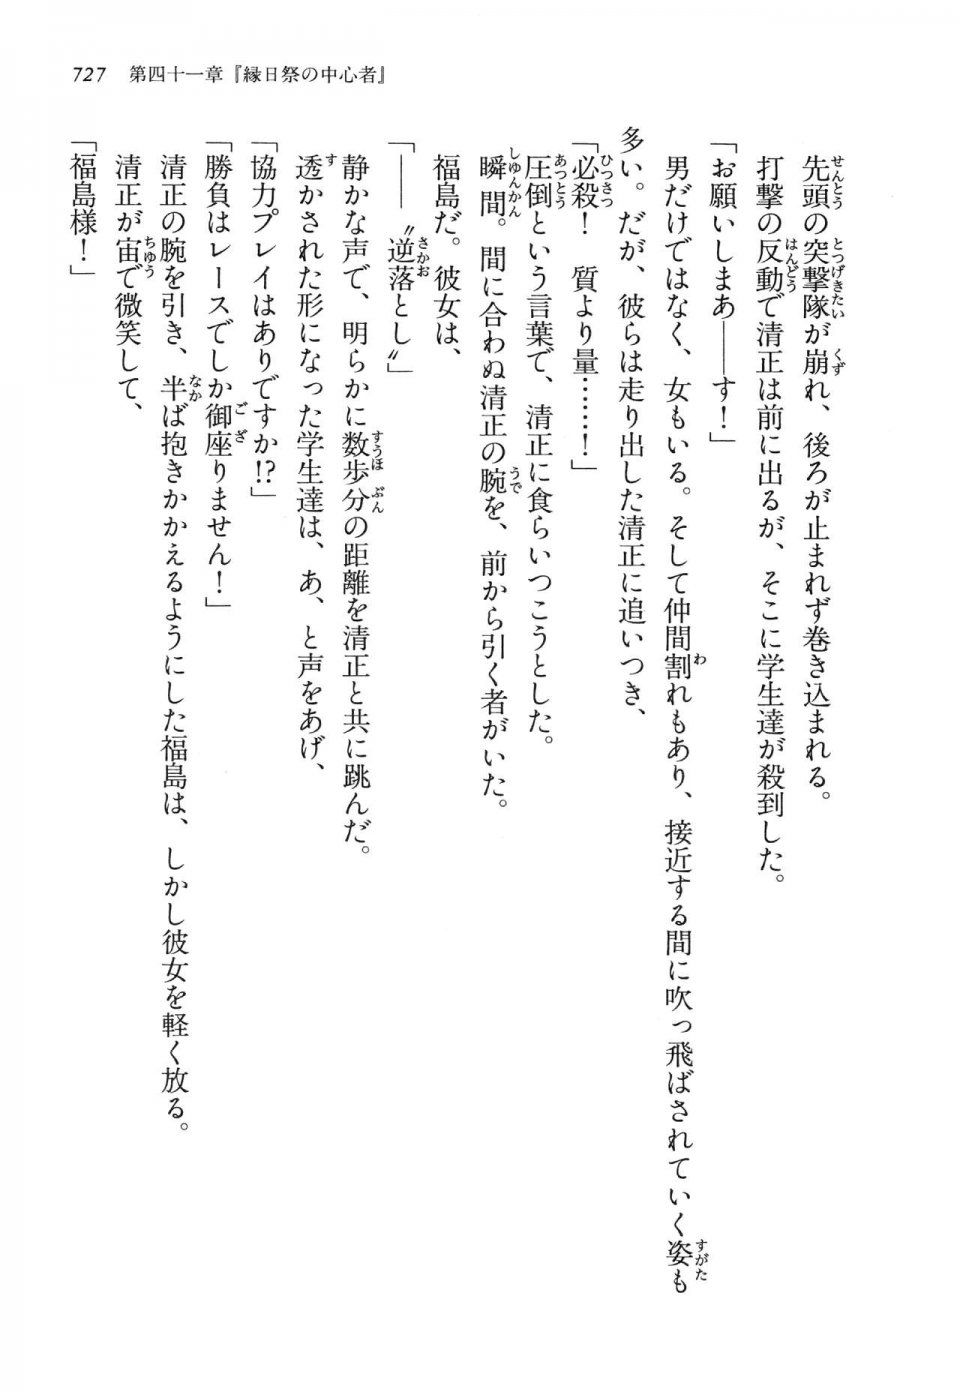 Kyoukai Senjou no Horizon LN Vol 14(6B) - Photo #727